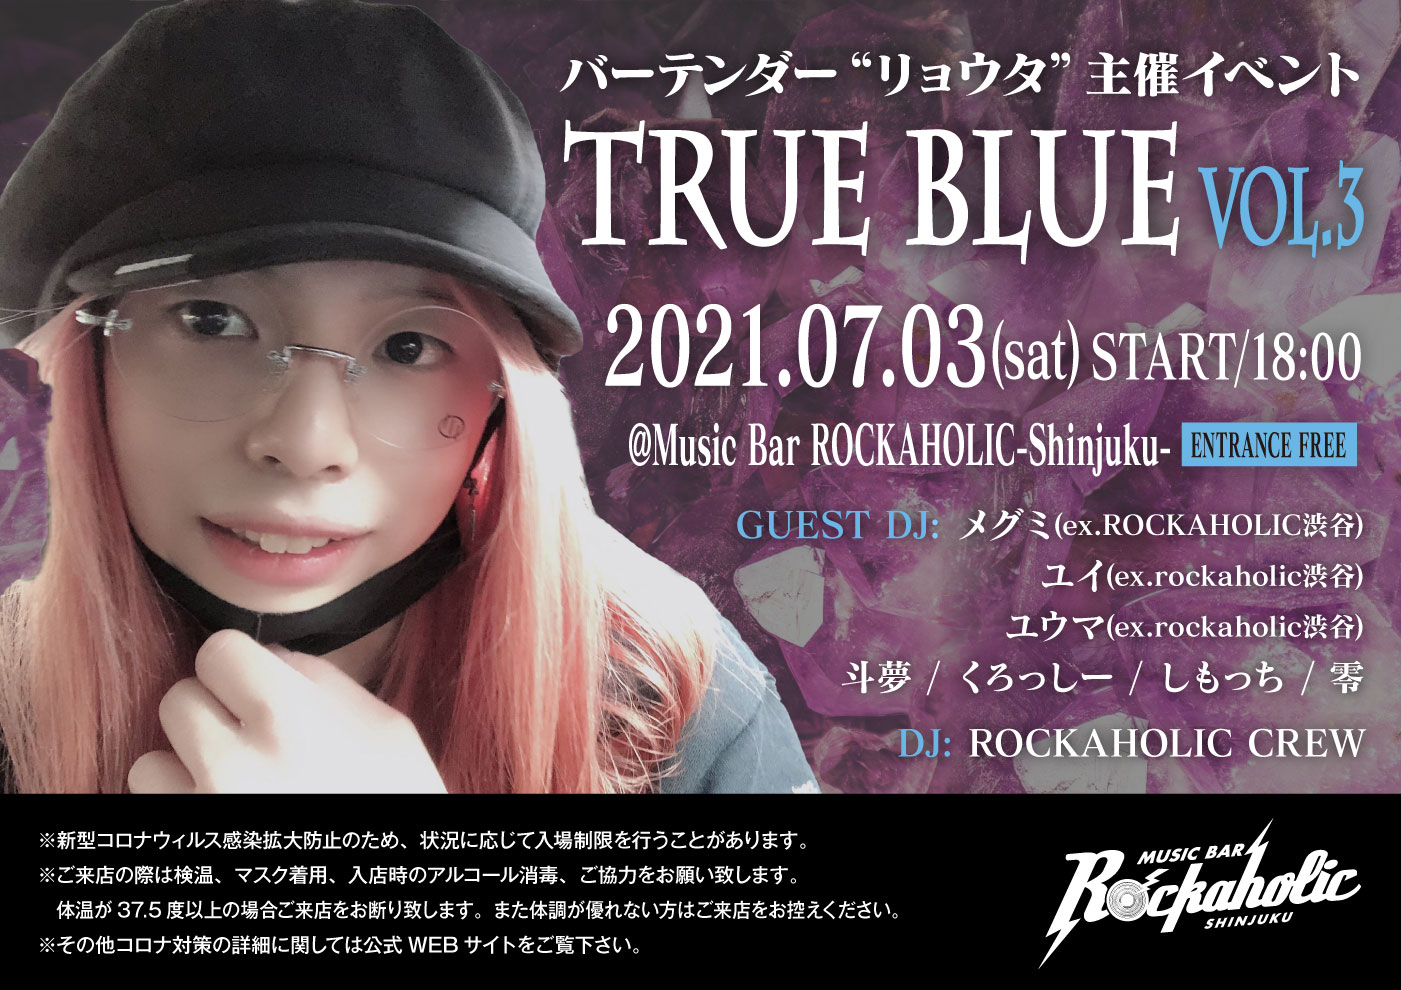 https://bar-rockaholic.jp/shibuya/blog/IMG_5465.JPG